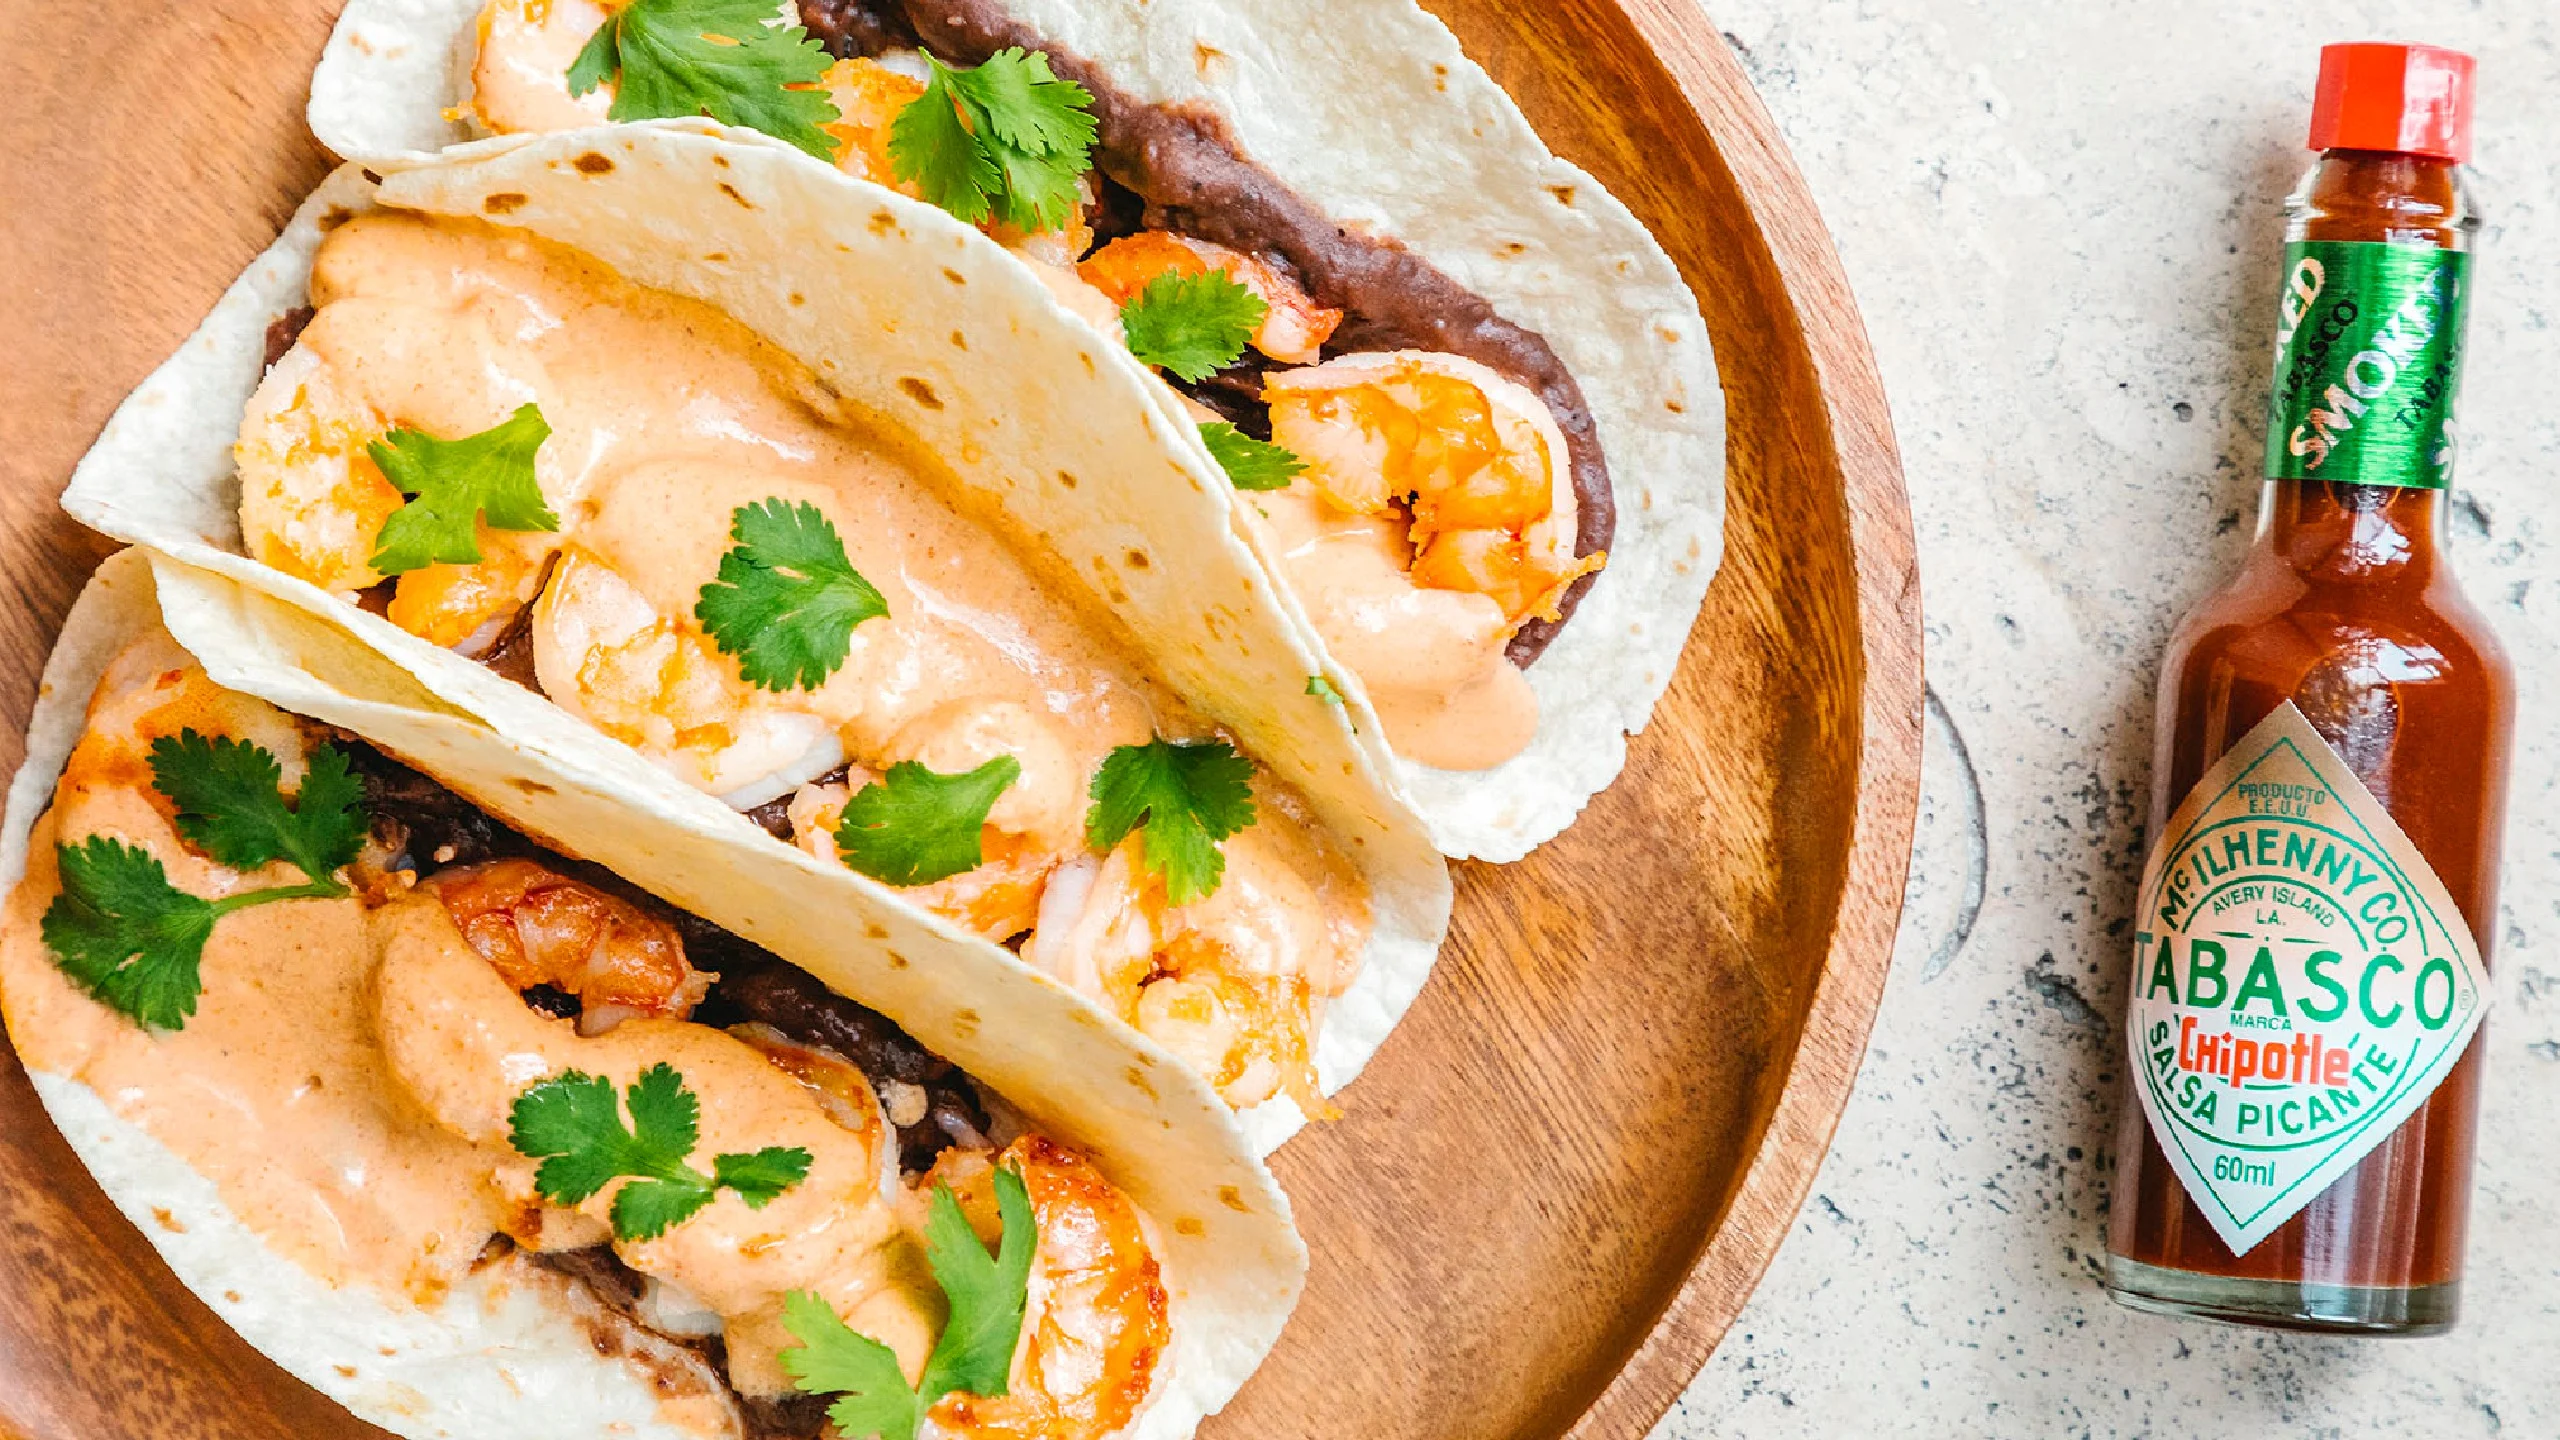 Cremosos y picositos: tacos de camarón con Salsa Tabasco Chipotle